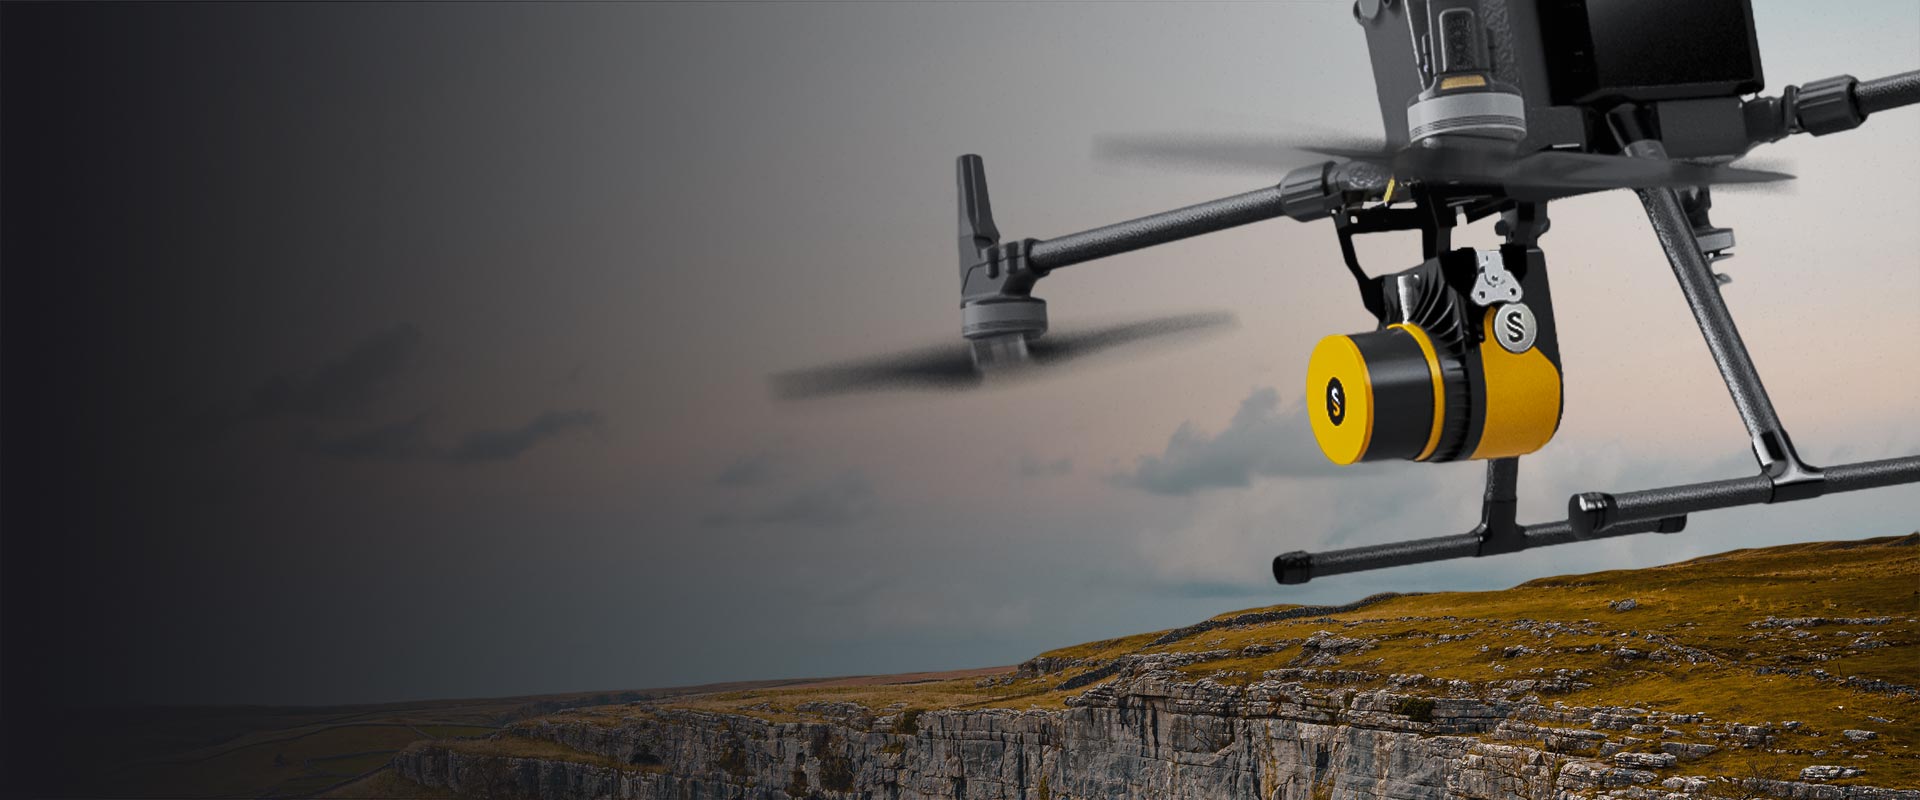 YellowScan Surveyor Ultra lidar system mounted on DJI M300 drone